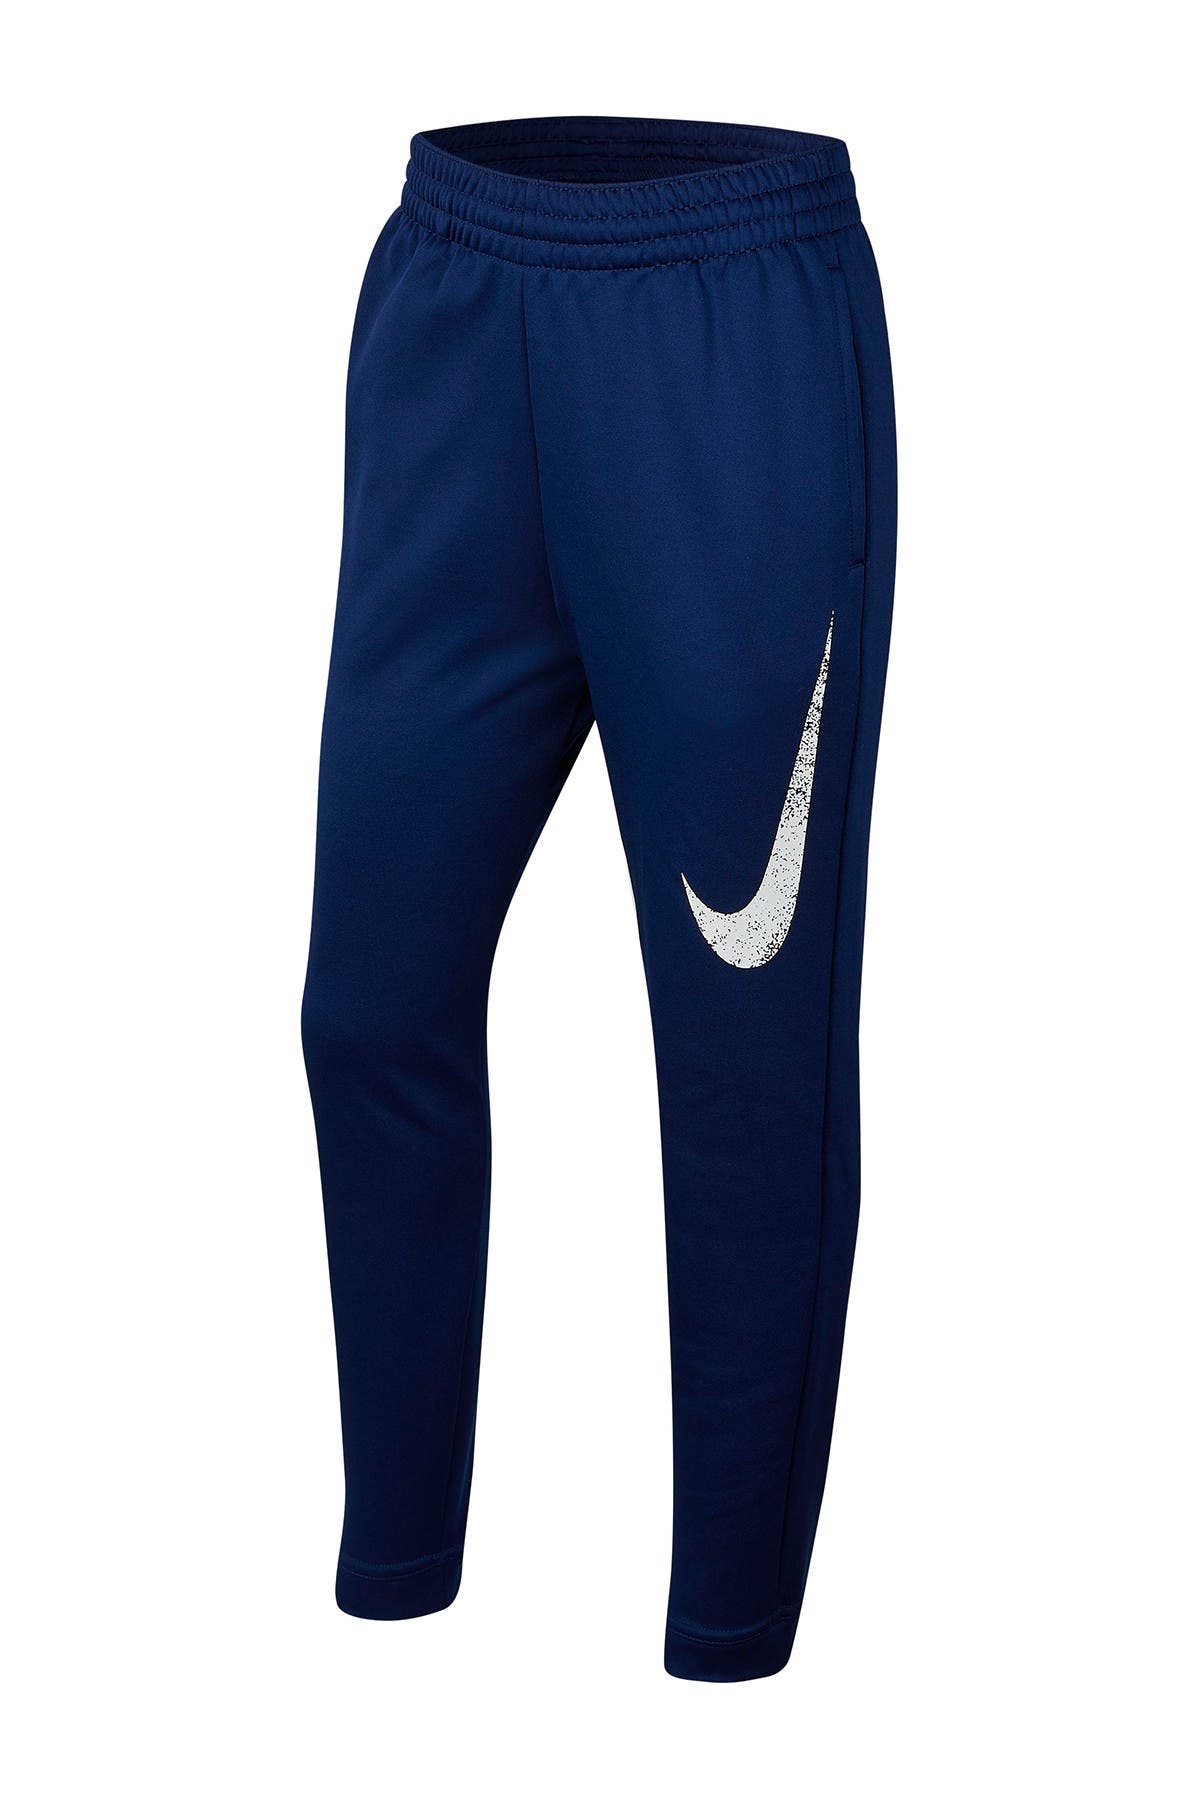 Nike | Therma Basketball Pants 